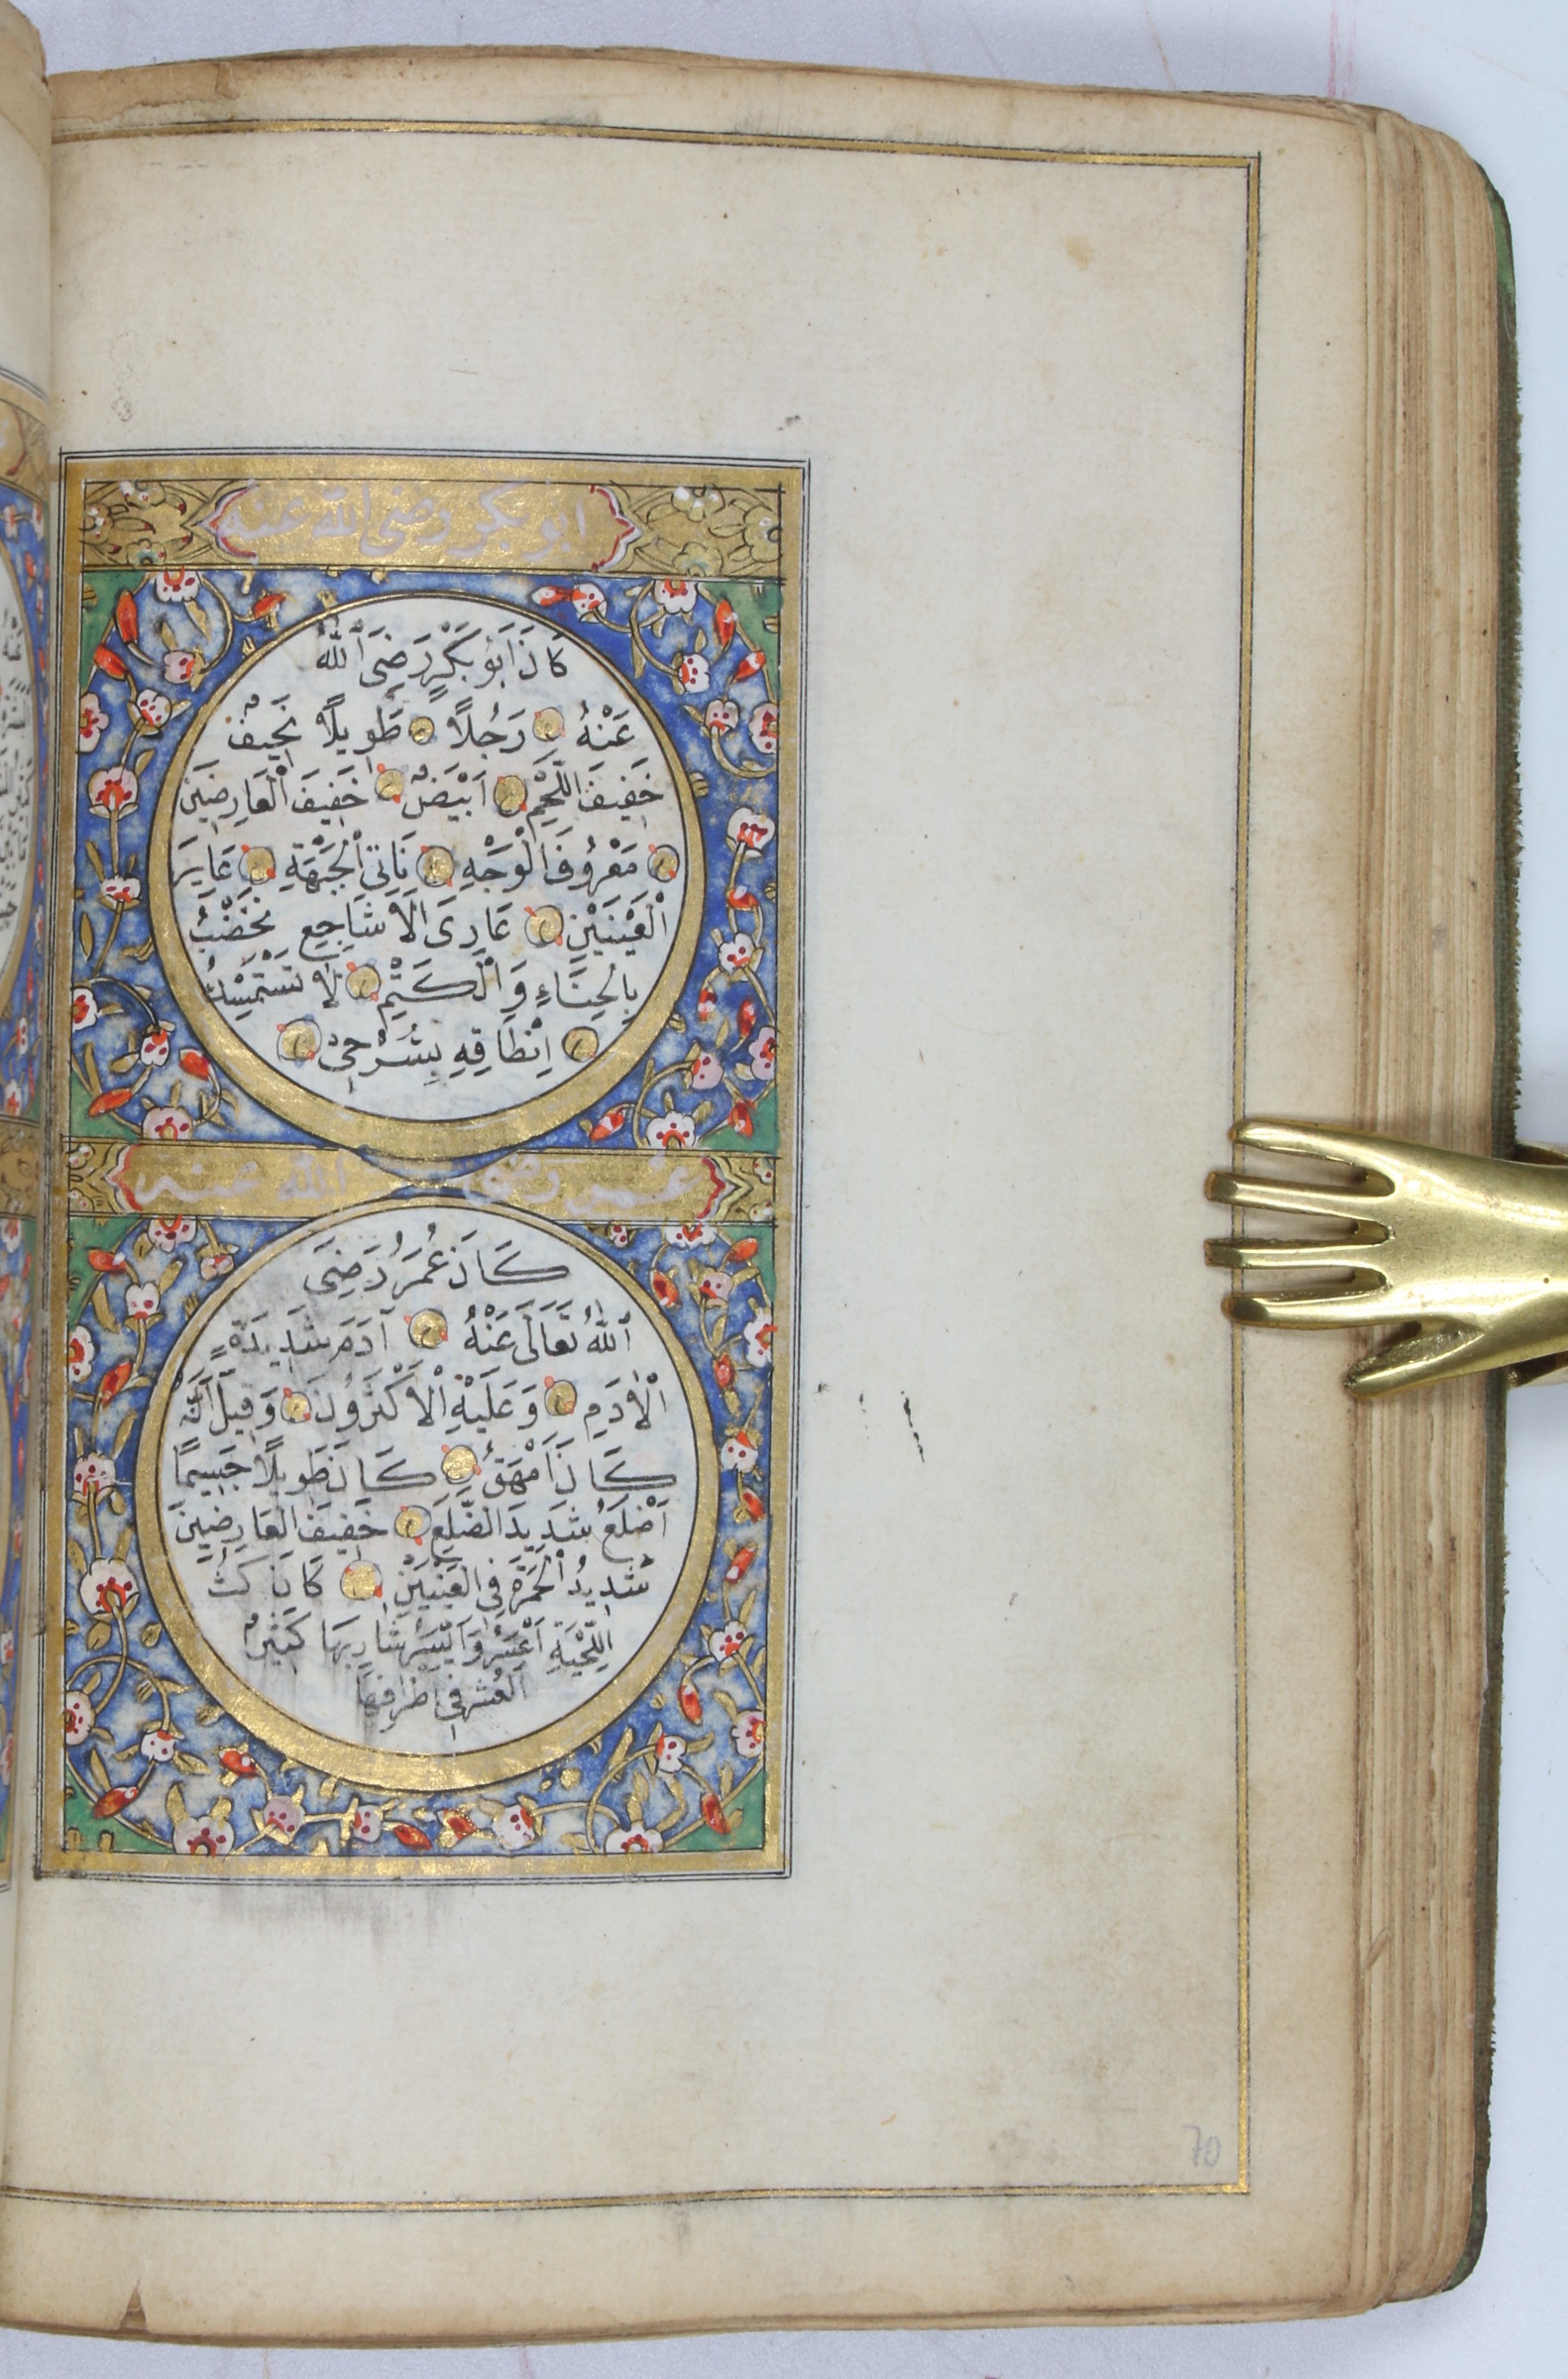 Prayer manuscript]. An Ottoman collection of prayers